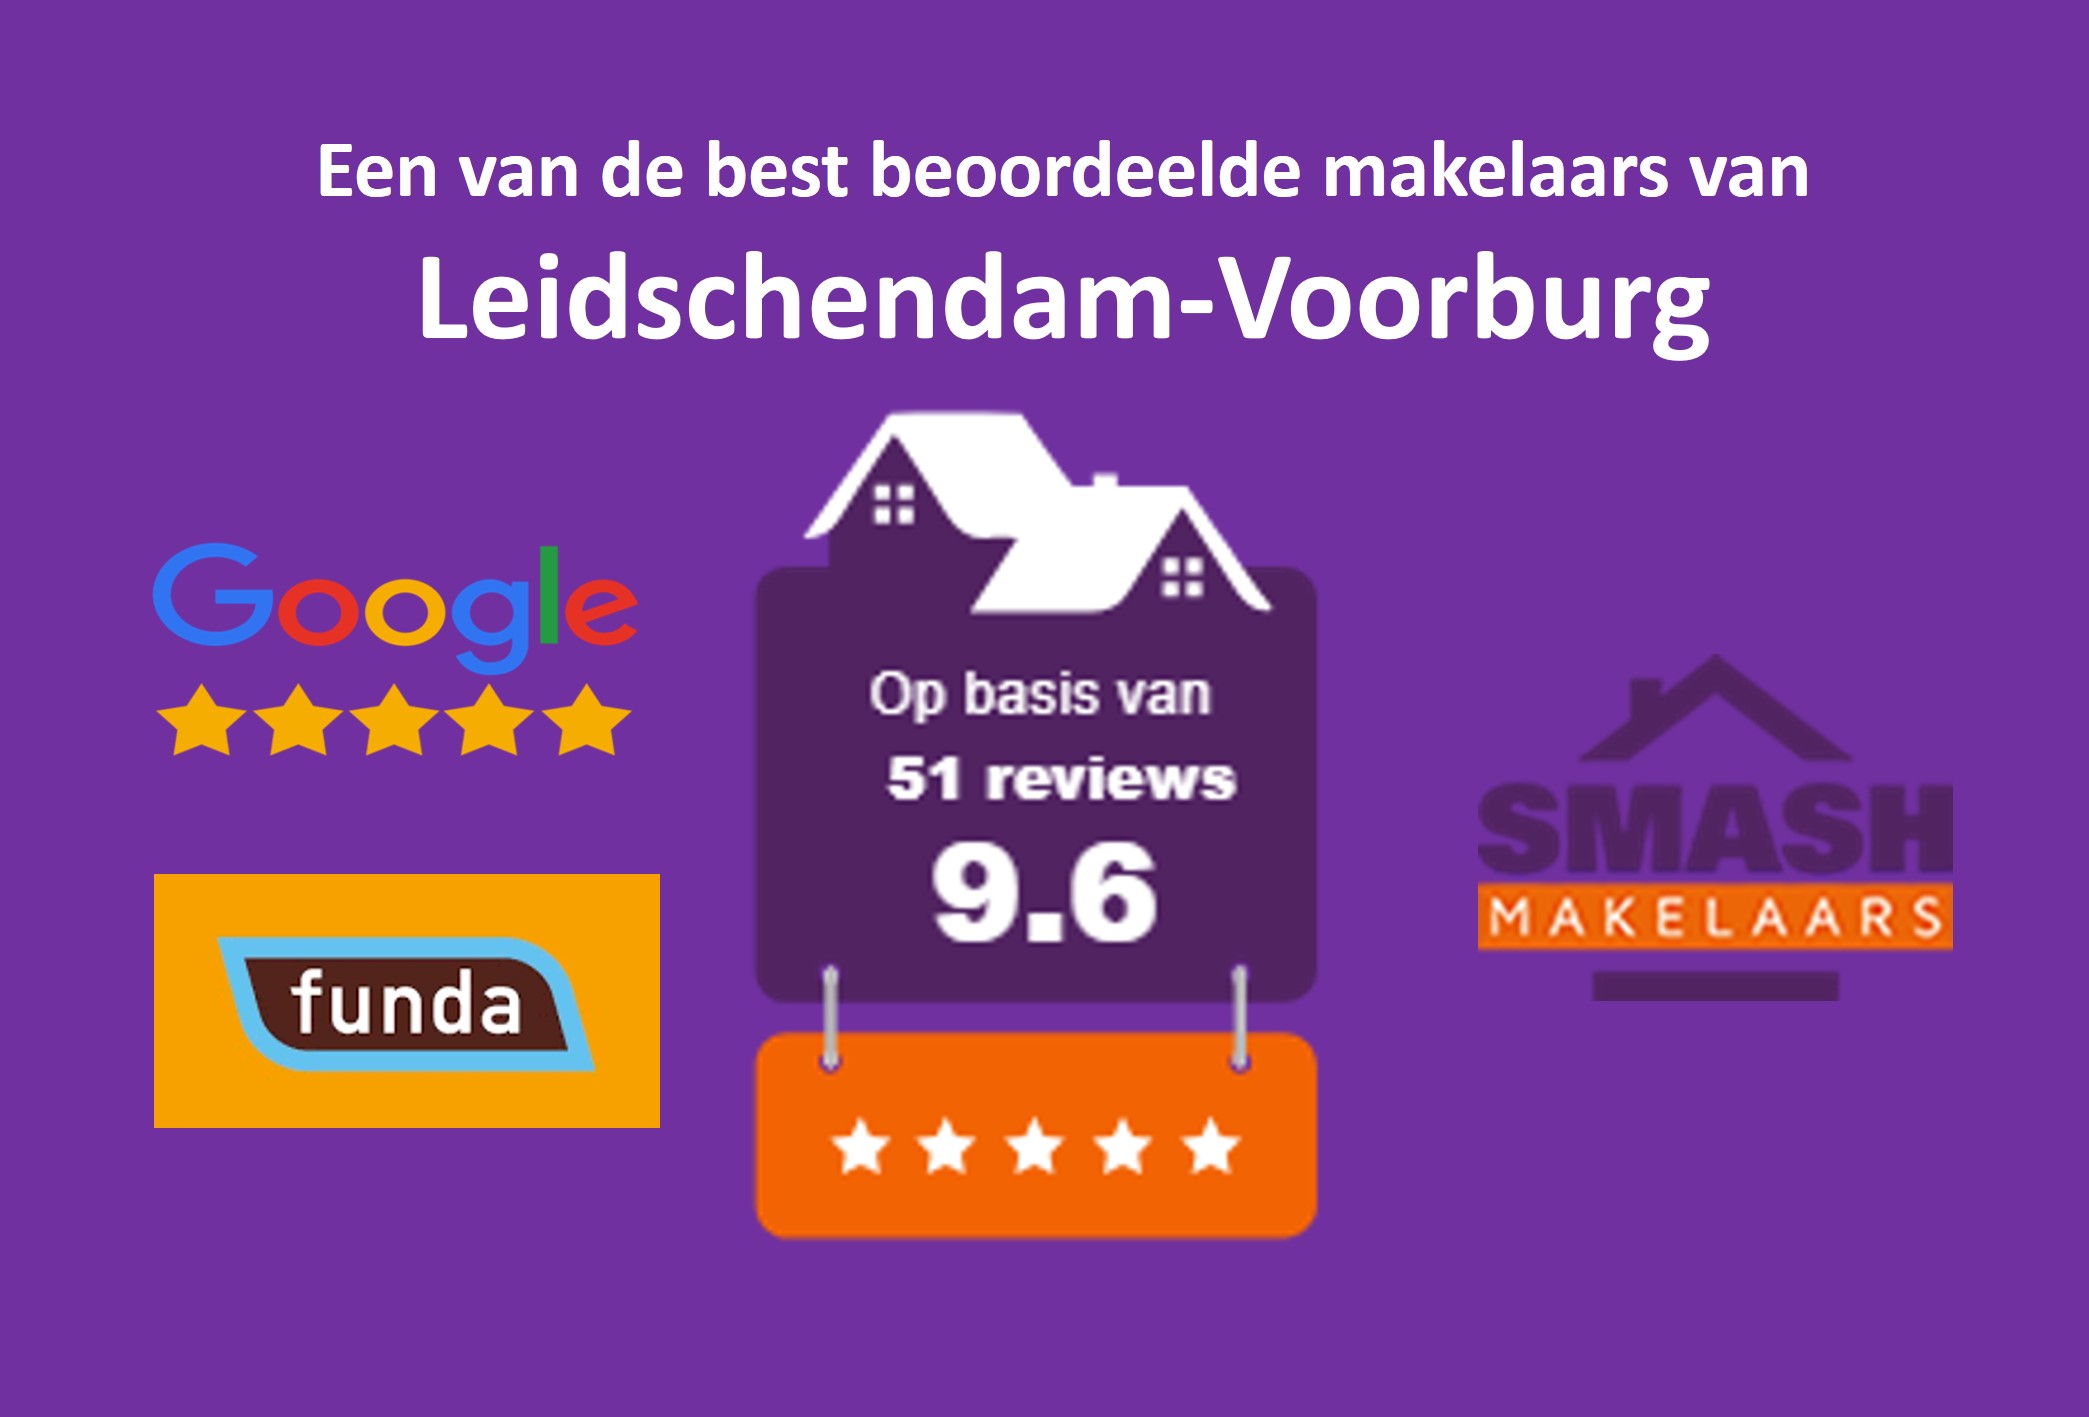 Beste makelaar van Leidschendam-Voorburg en Den Haag